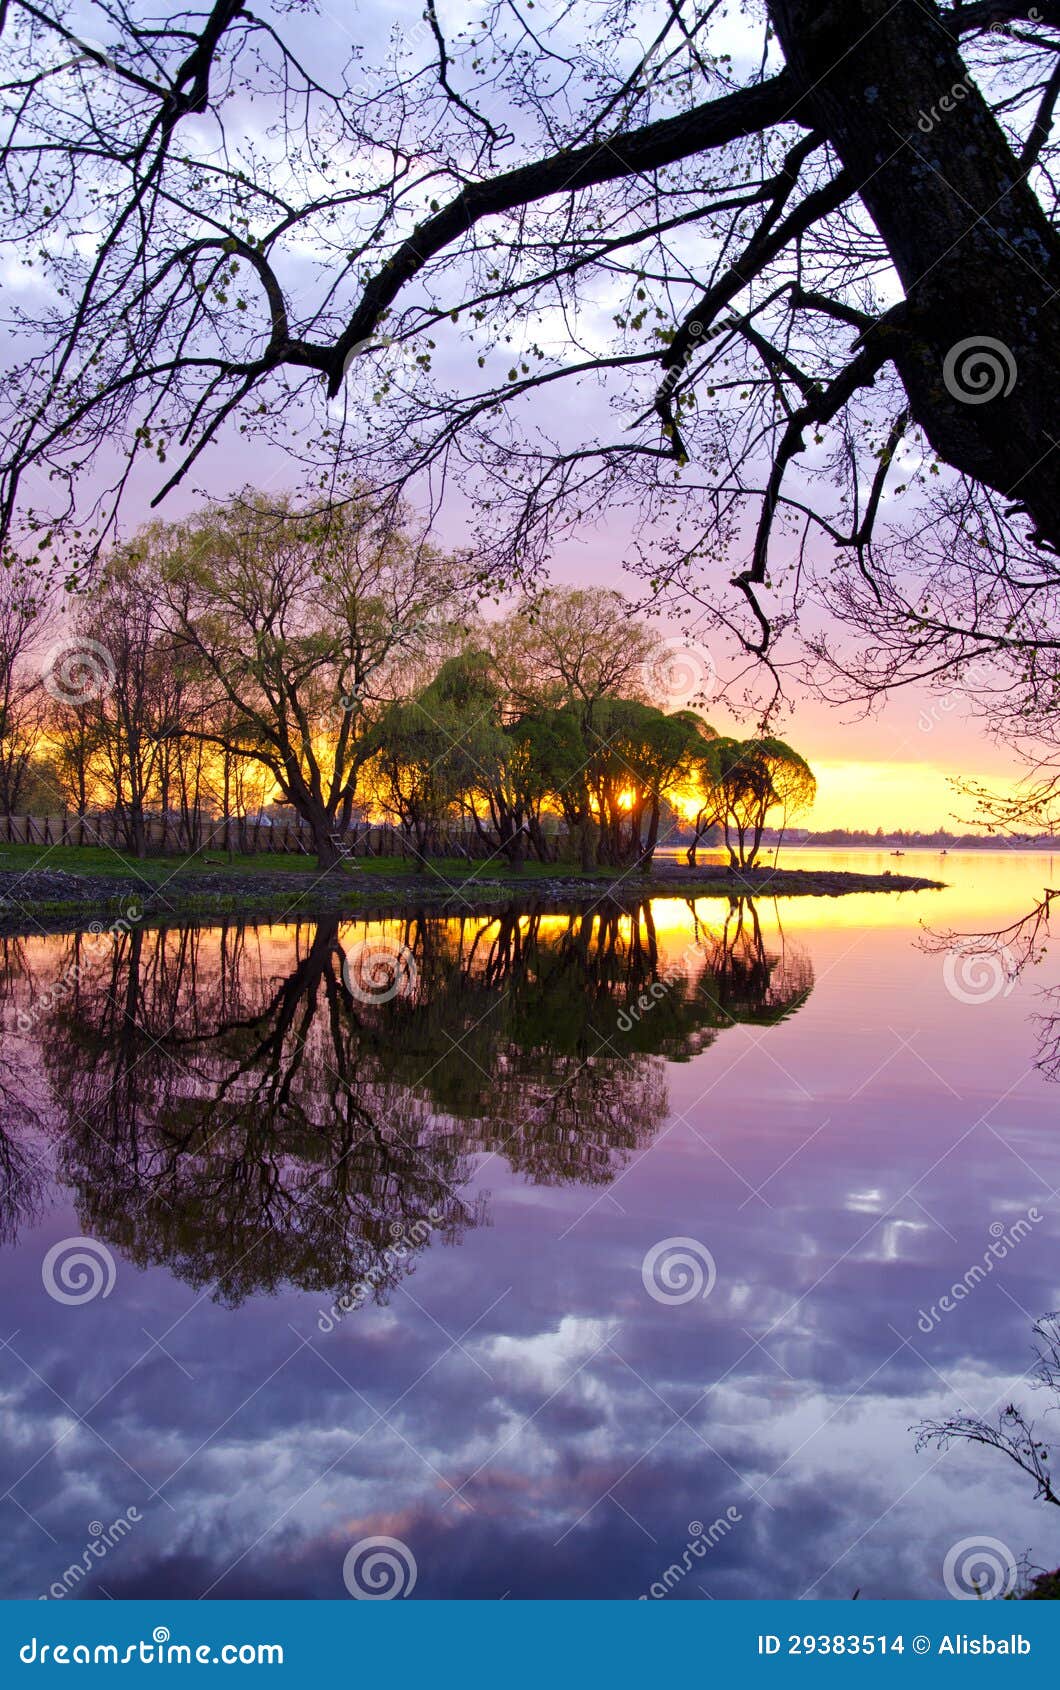 Beautiful Evening Sunset Landscape on Lake Stock Photo - Image of ...